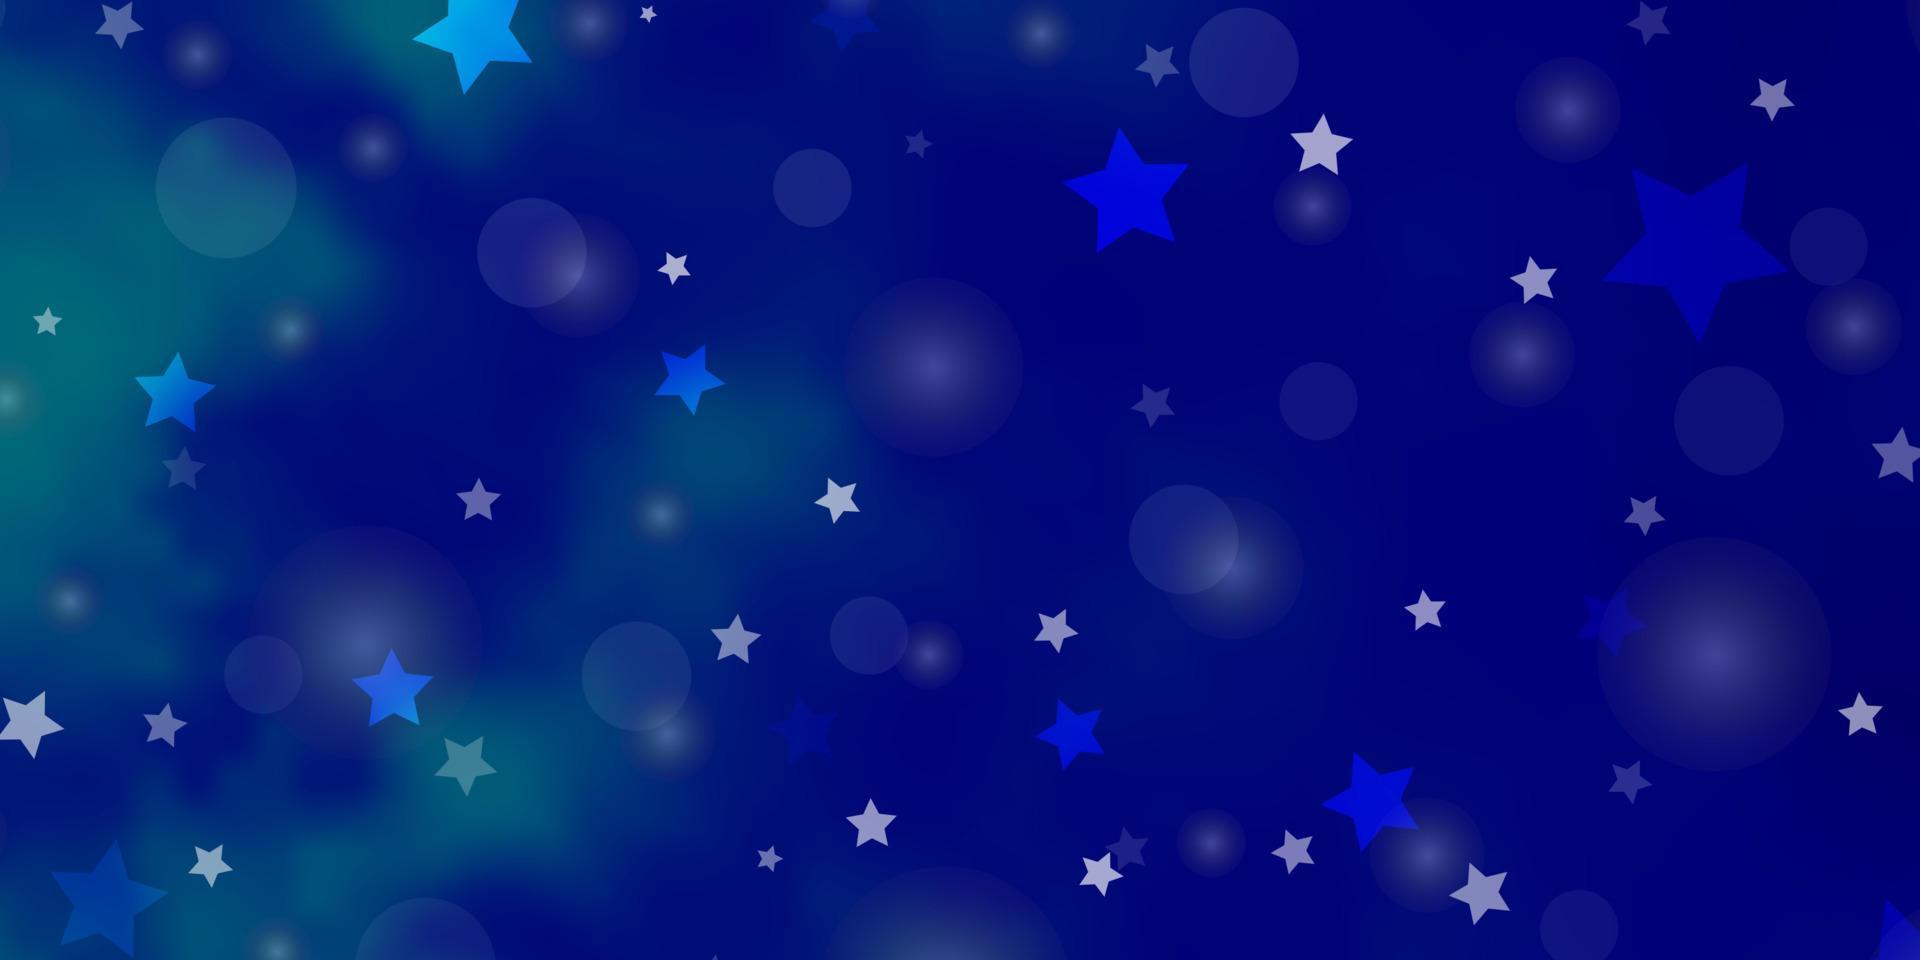 textura vector azul claro com círculos, estrelas.